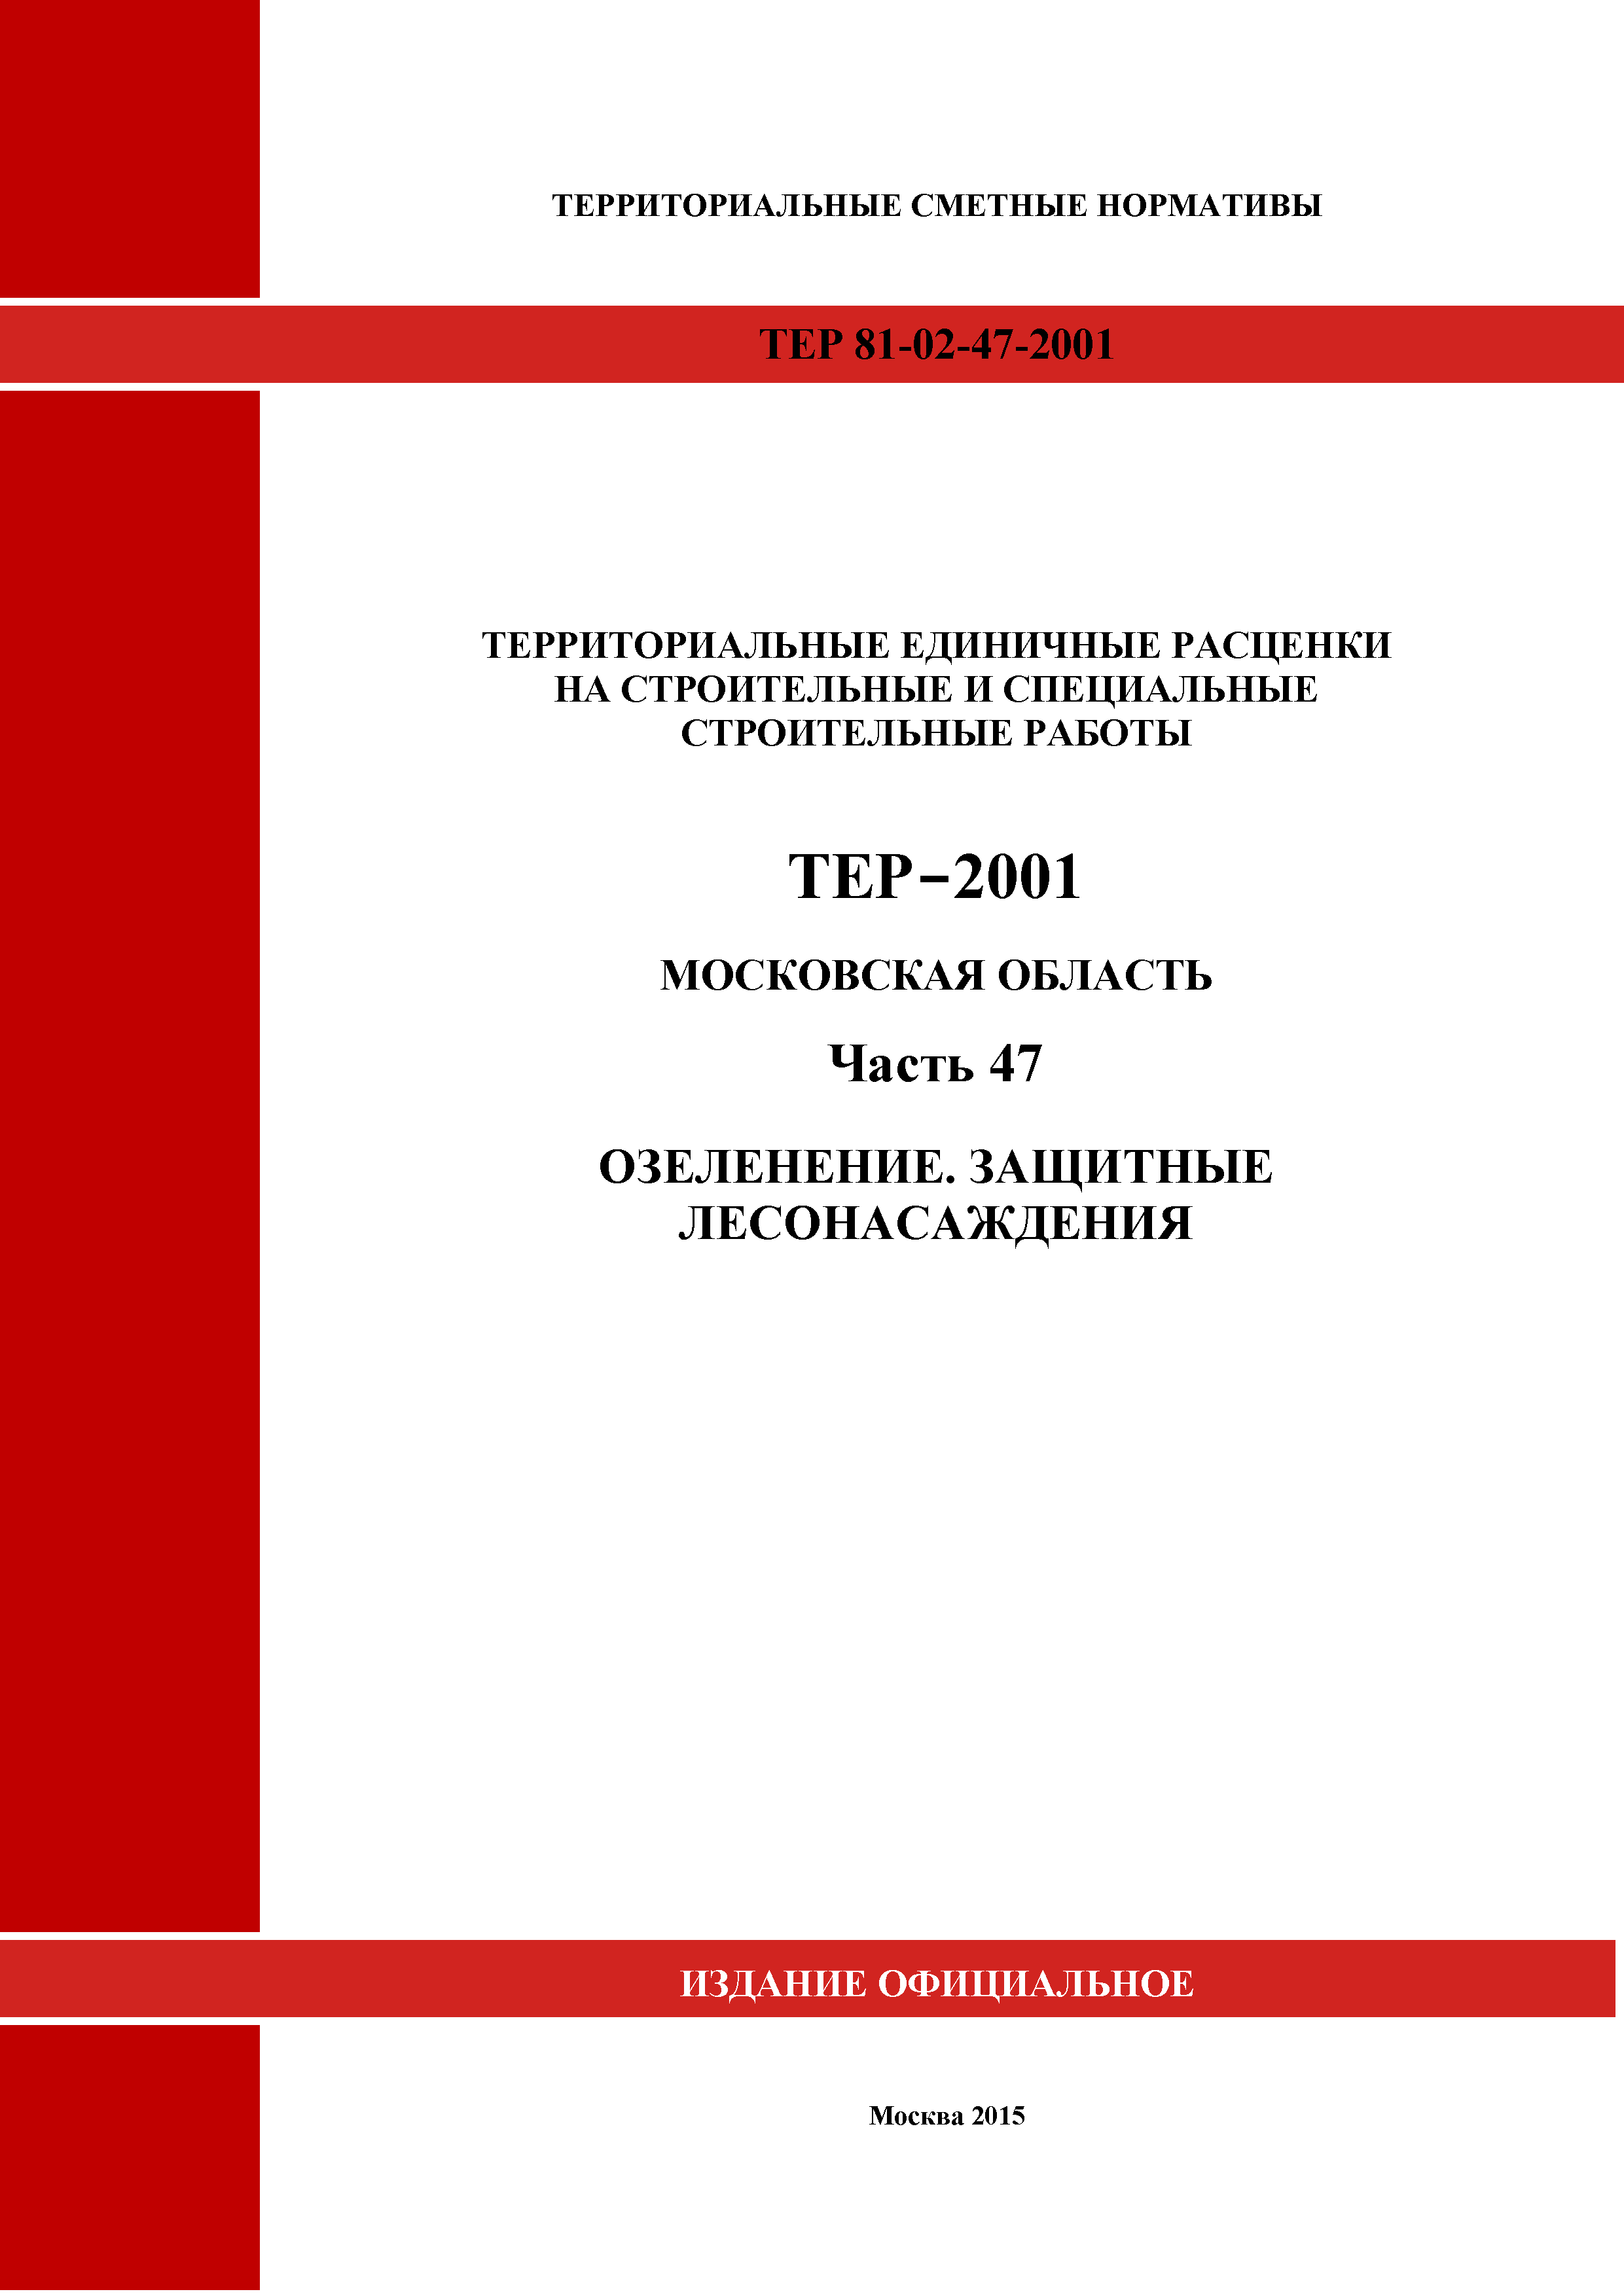 ТЕР 47-2001 Московской области